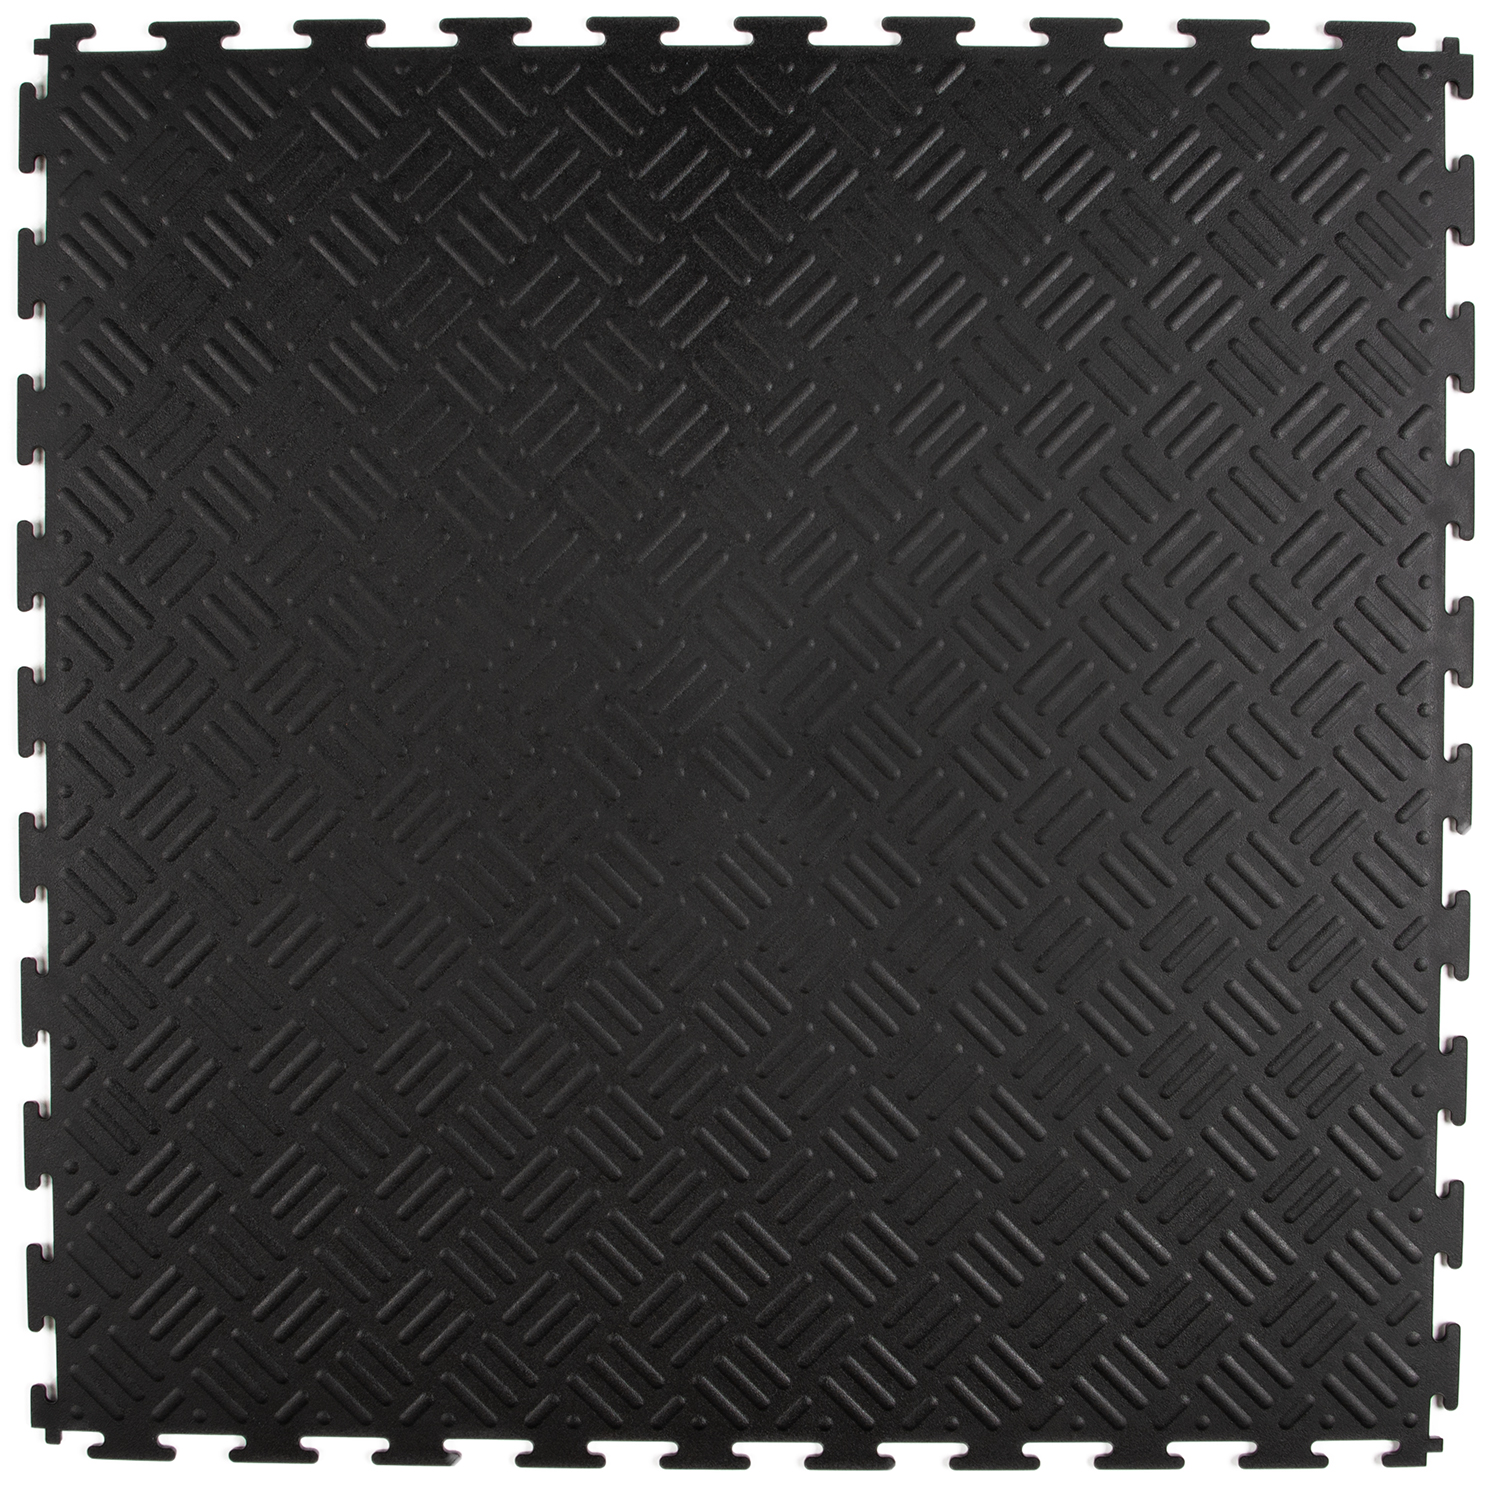 struik Bestudeer Geladen PVC kliktegel traanplaat zwart 530x530x4mm | Rubbermagazijn